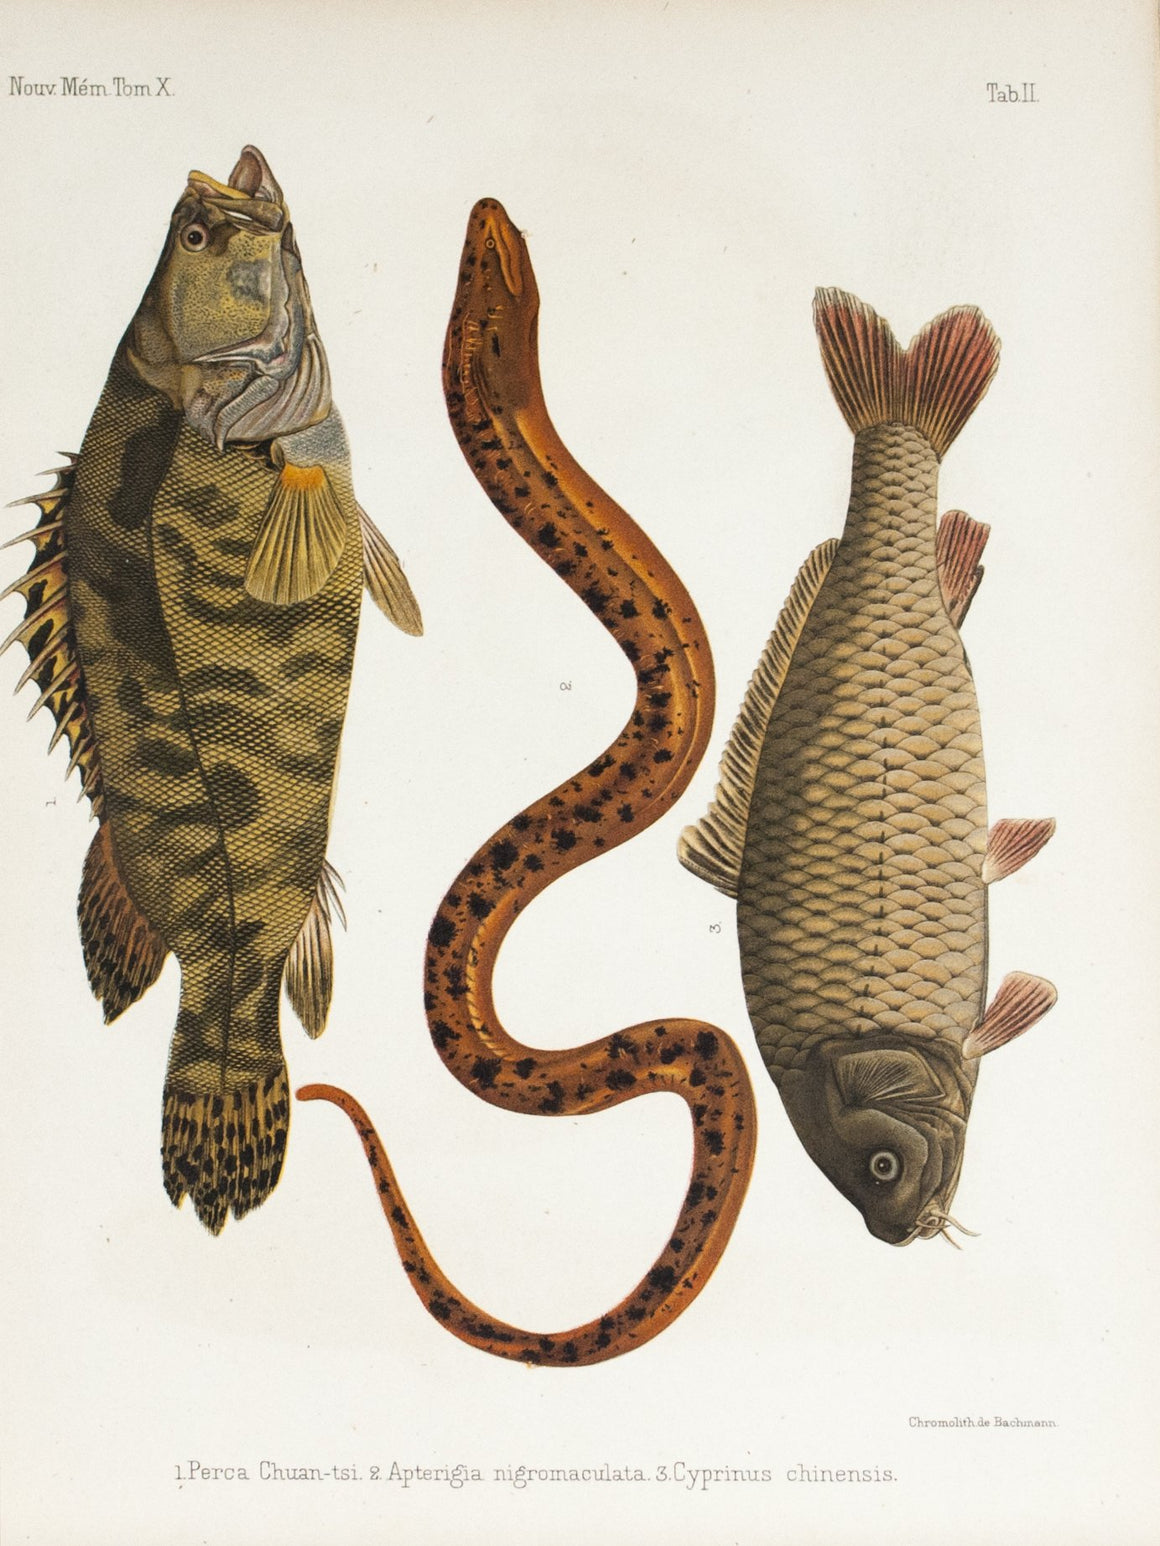 1855 Tab II - Mandarin fish - Imprimerie de L'Universite Imeriale